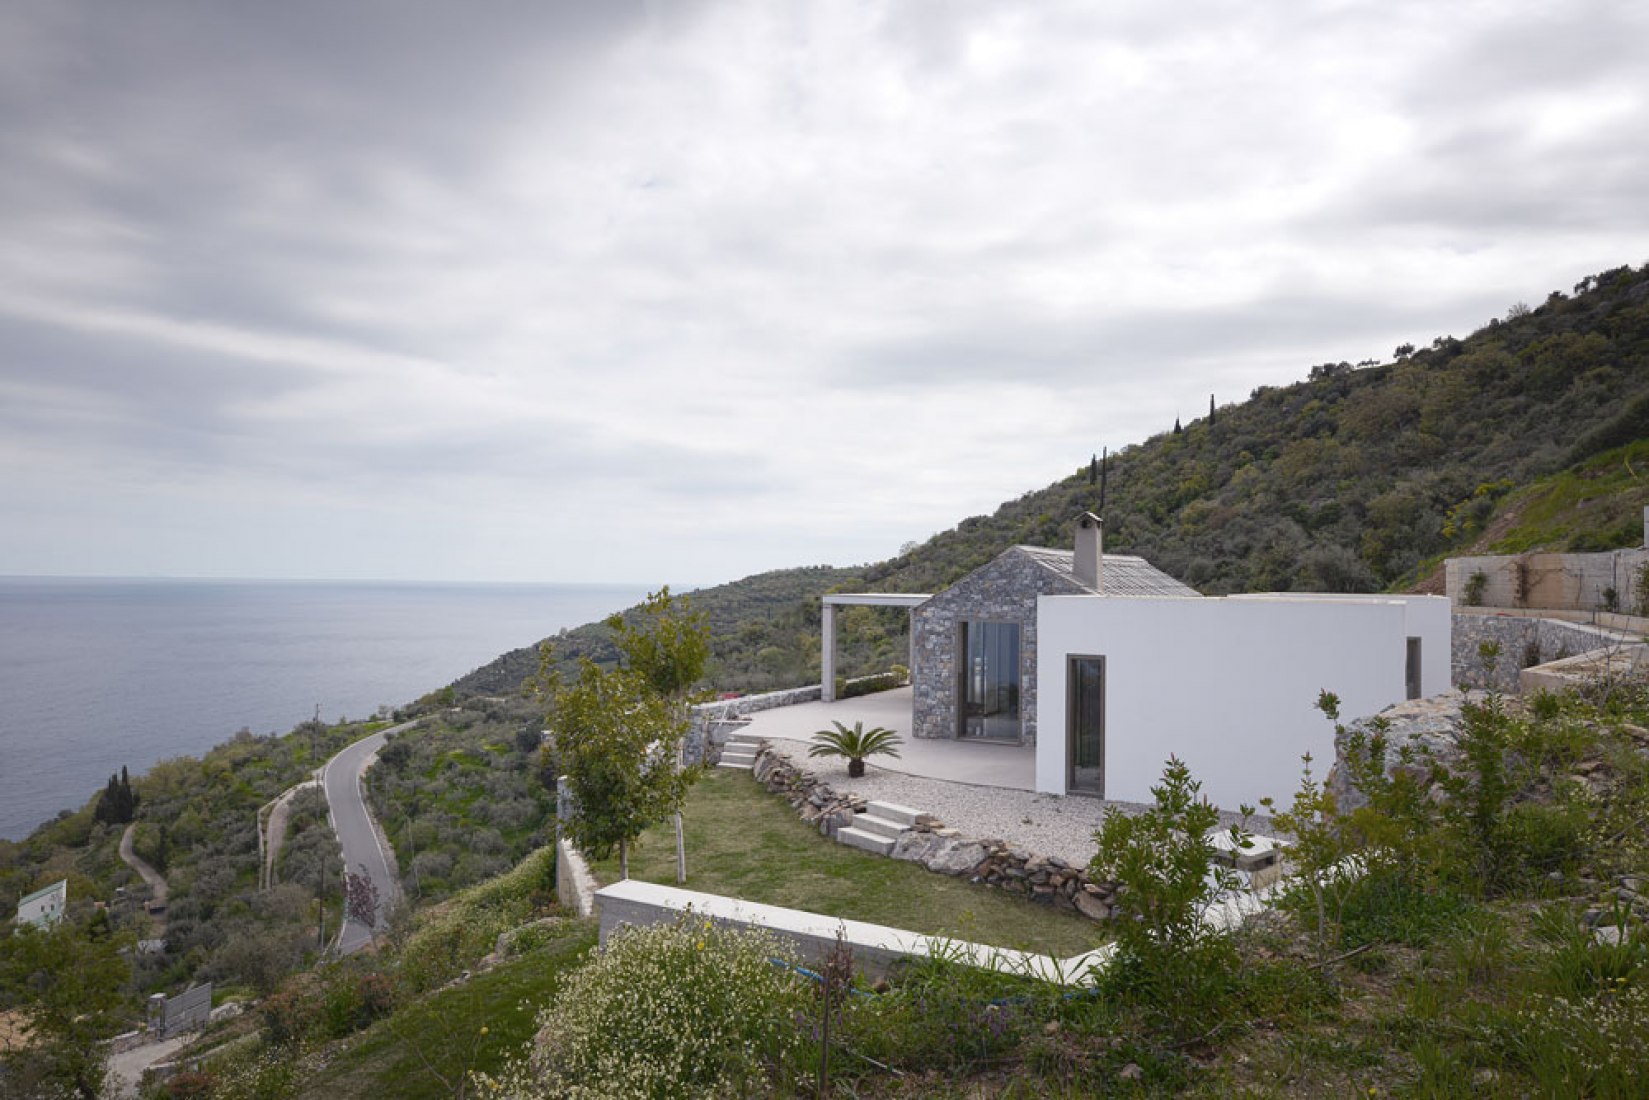 Outside view. Villa Melana by Valia Foufa and Panagiotis Papassotiriou. Photography © Pygmalion Karatzas.